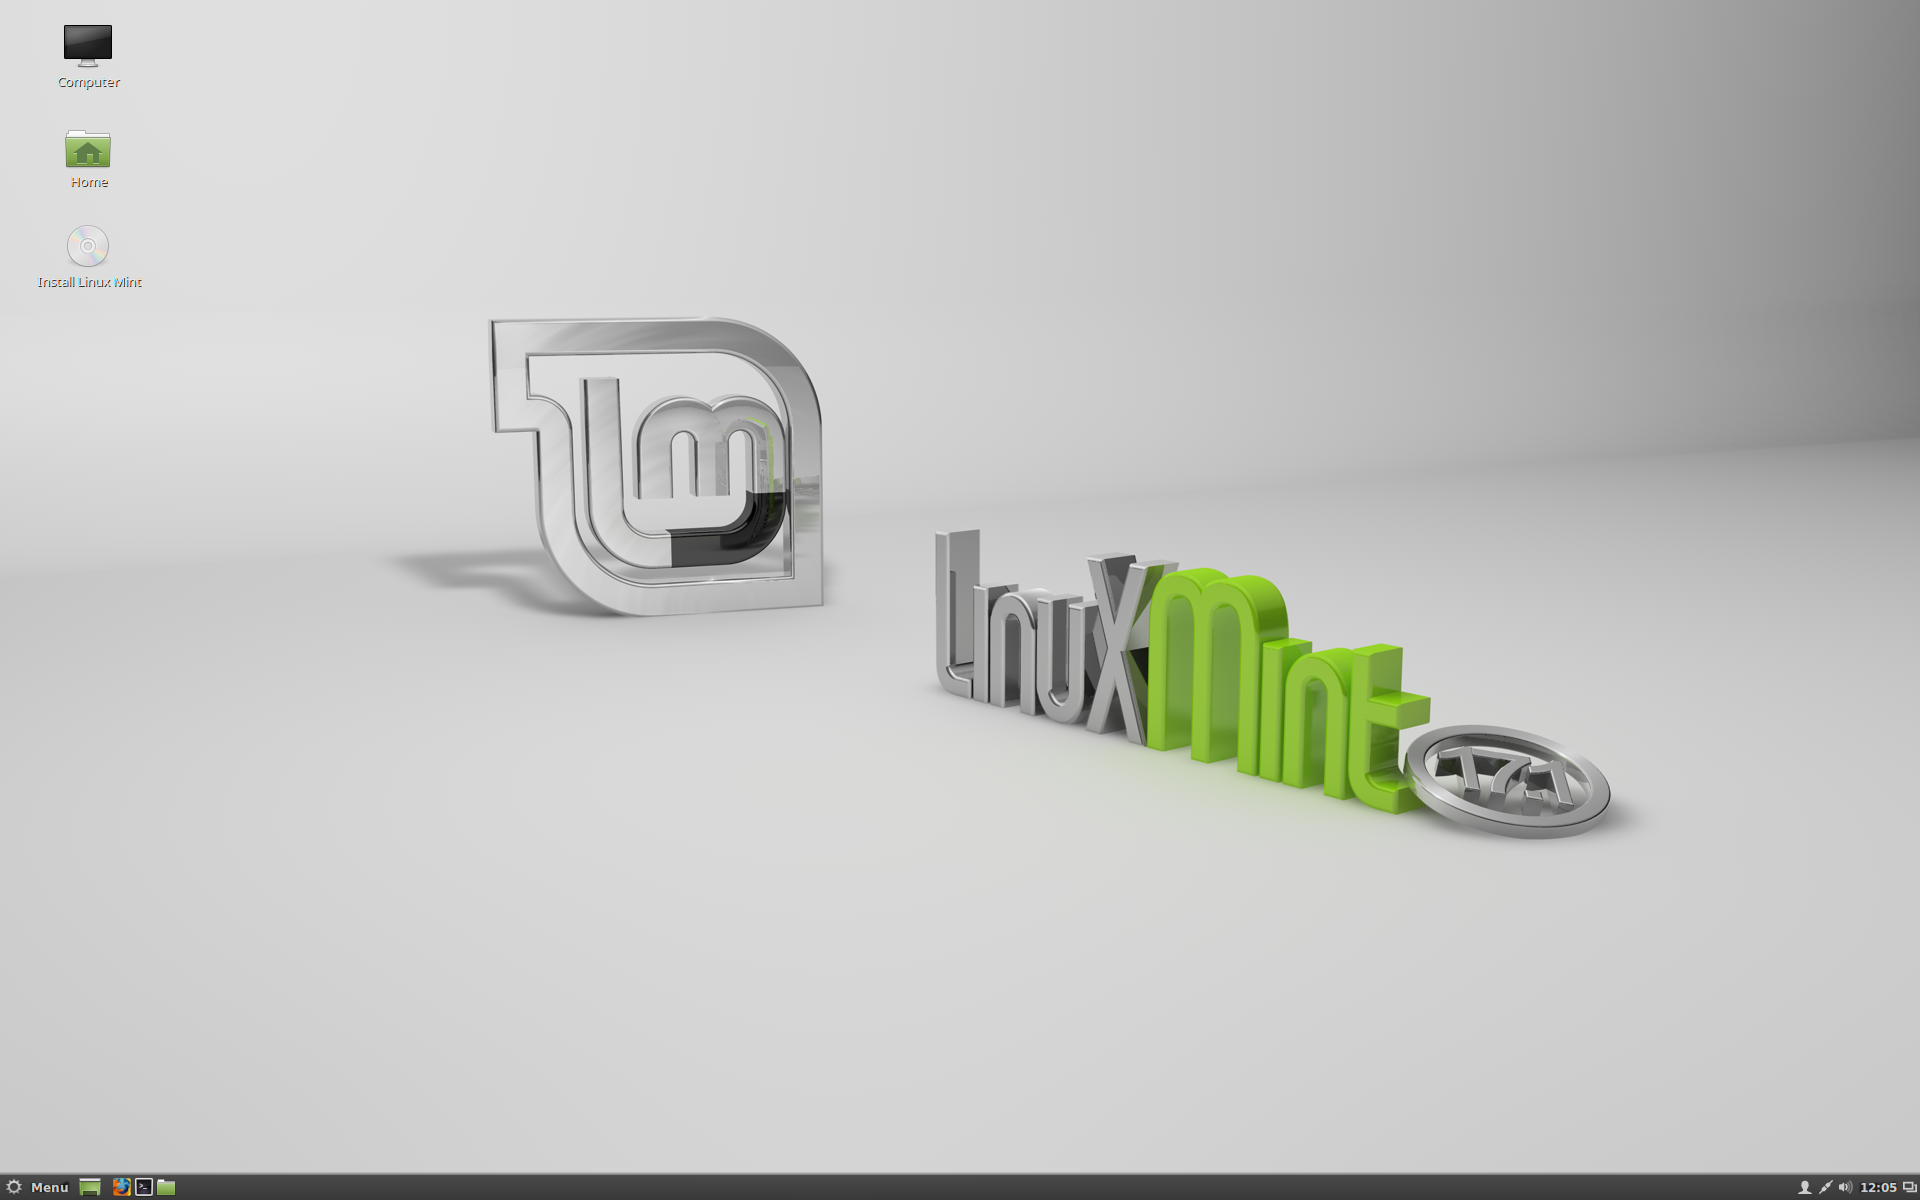 Tämä on Linux Mint 17.1 Cinnamon, koodinimi Rebecca